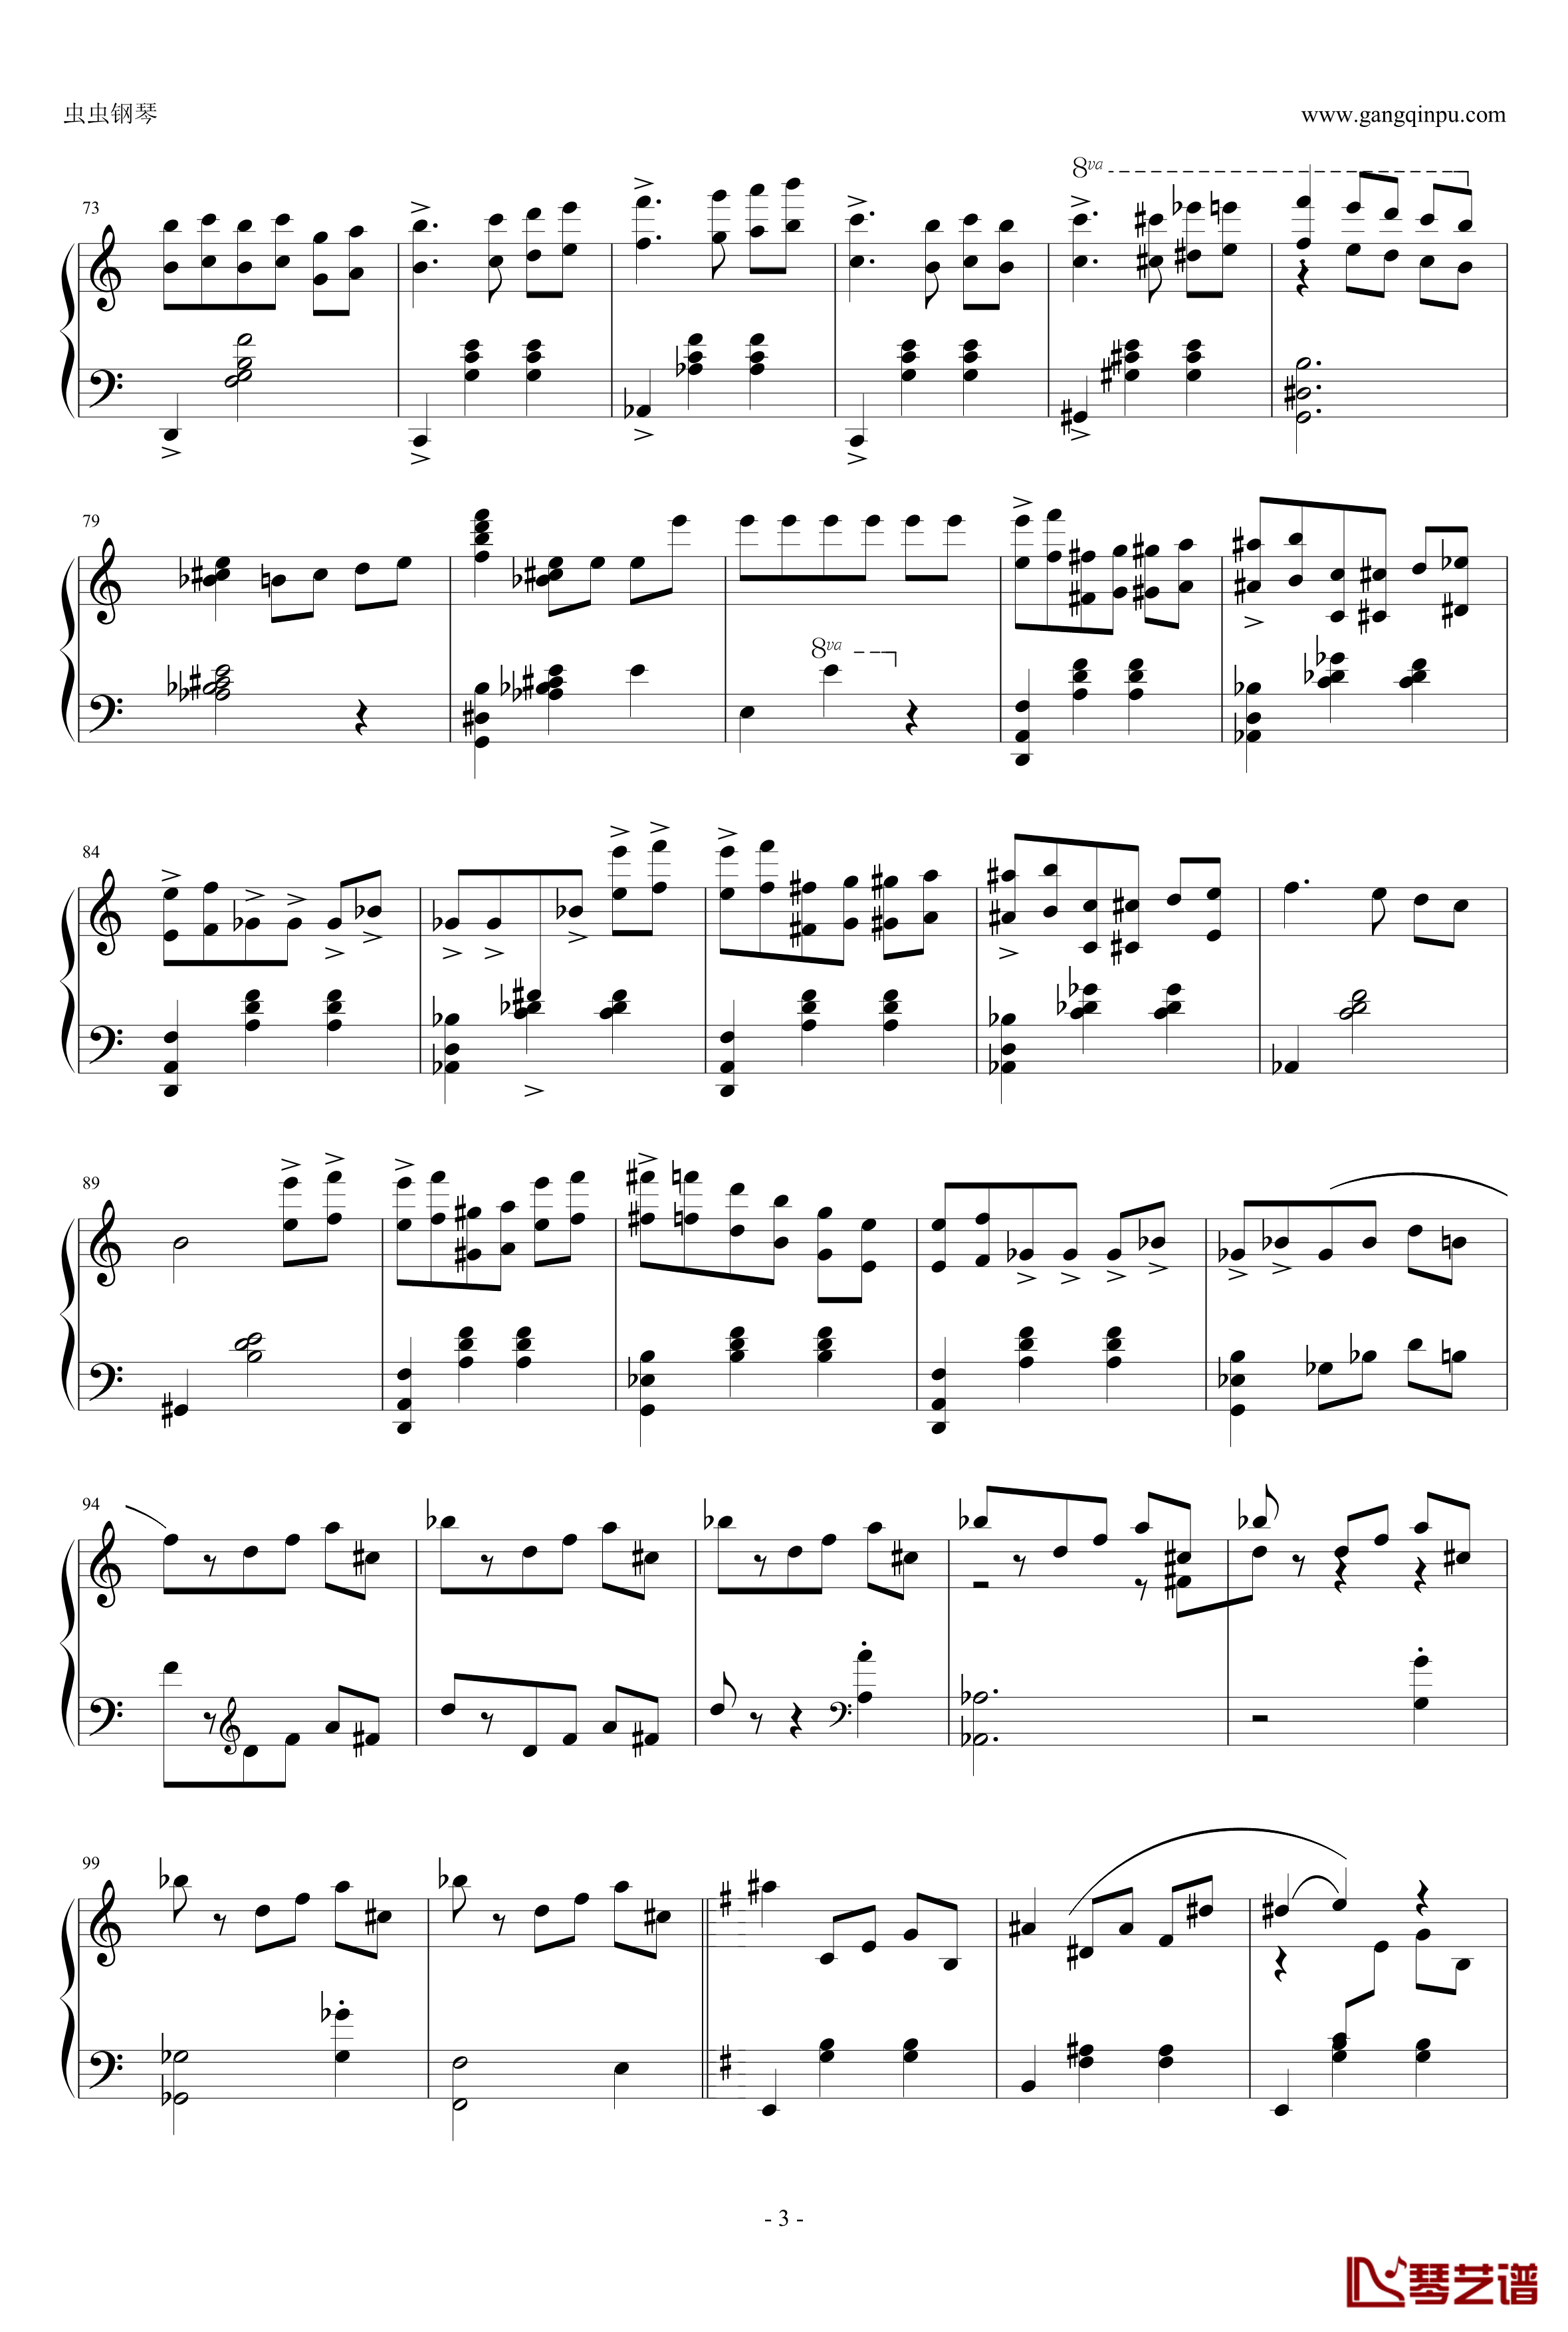 圆舞曲钢琴谱-灰姑娘-普罗科非耶夫3